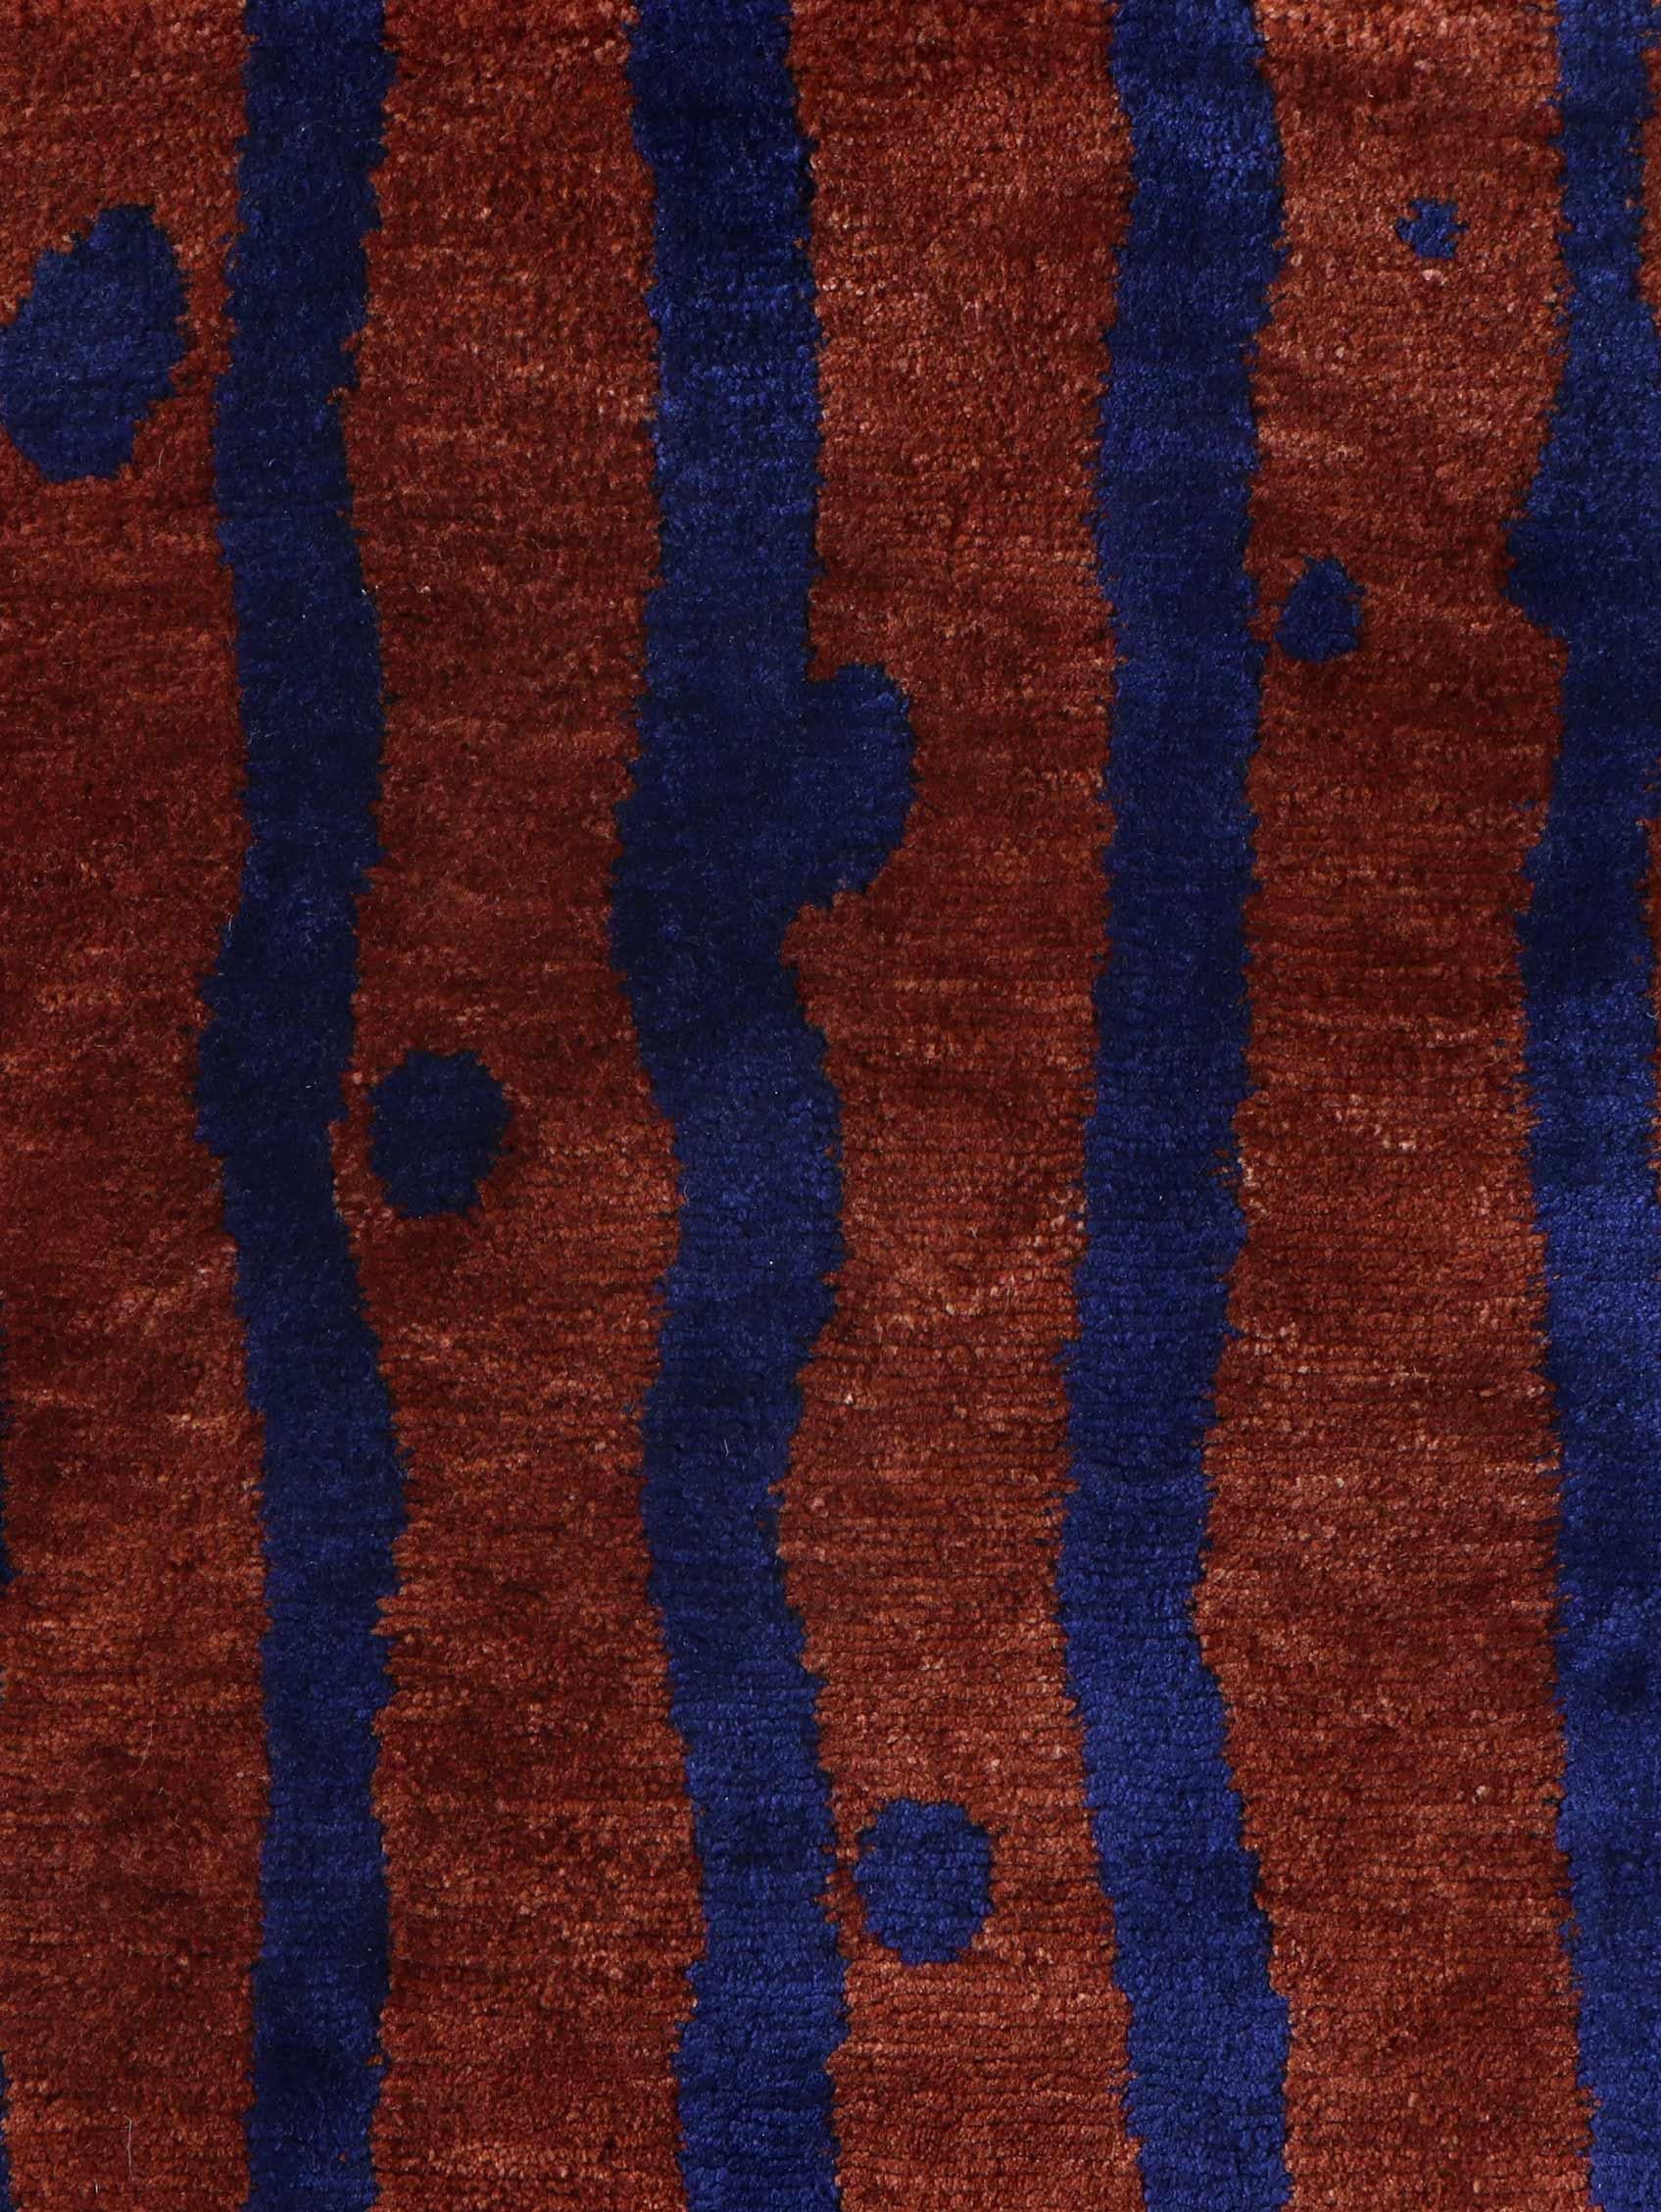 Motif du tapis : Rayure goutteuse - Isthme
MATERIAL : 100% laine mérinos
Qualité : Tissage croisé tibétain, tissé à la main 
Taille : 8'-0